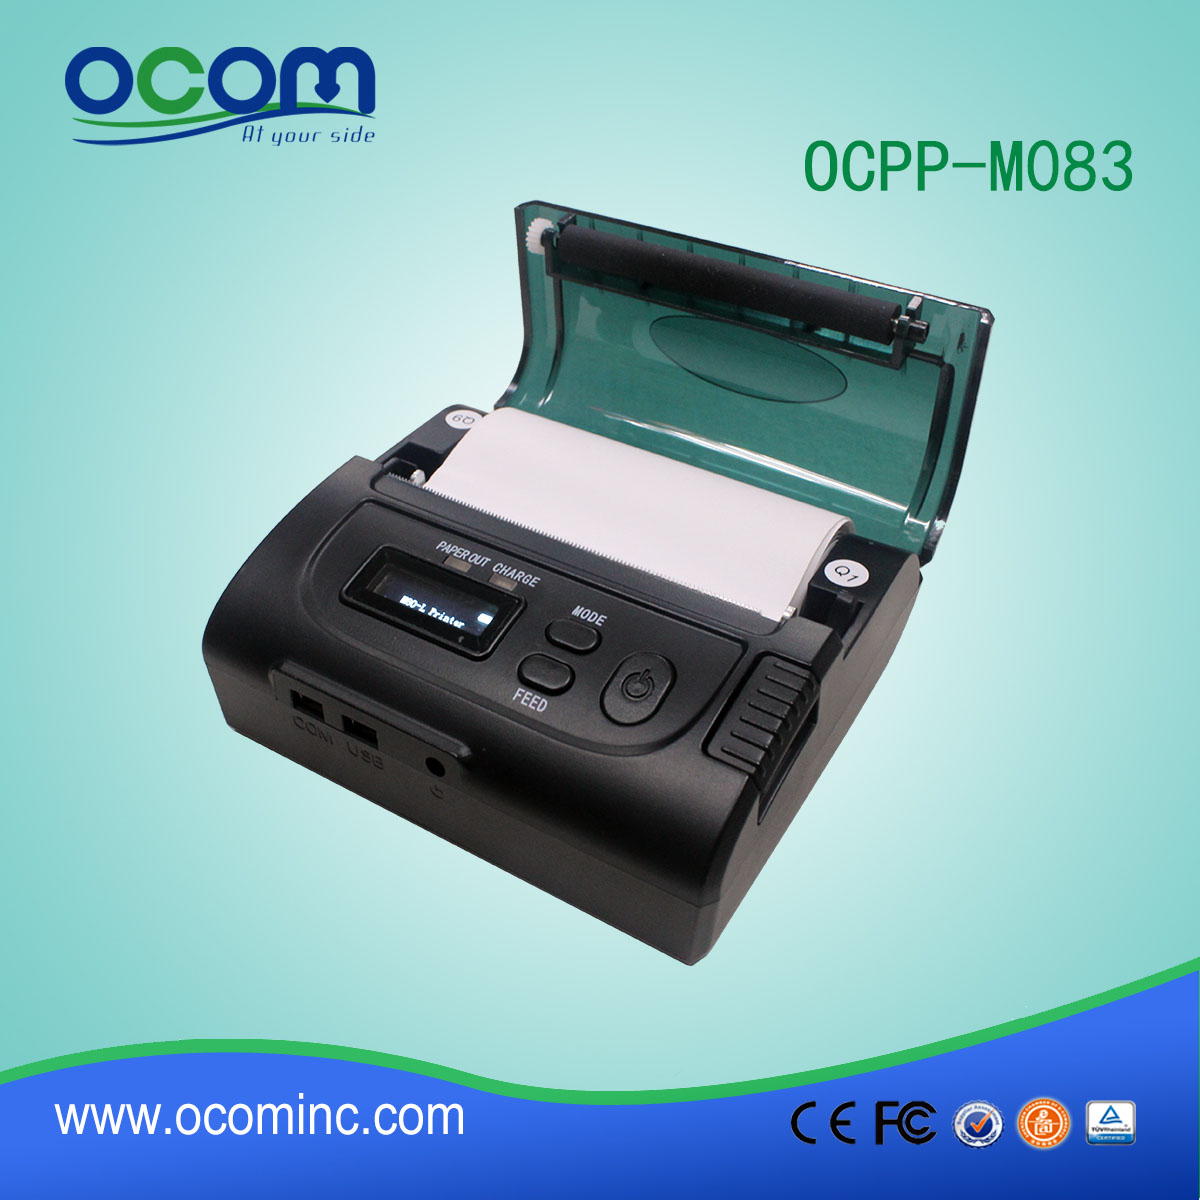 Мобильный Pos термопринтер для системы такси OCPP-M083